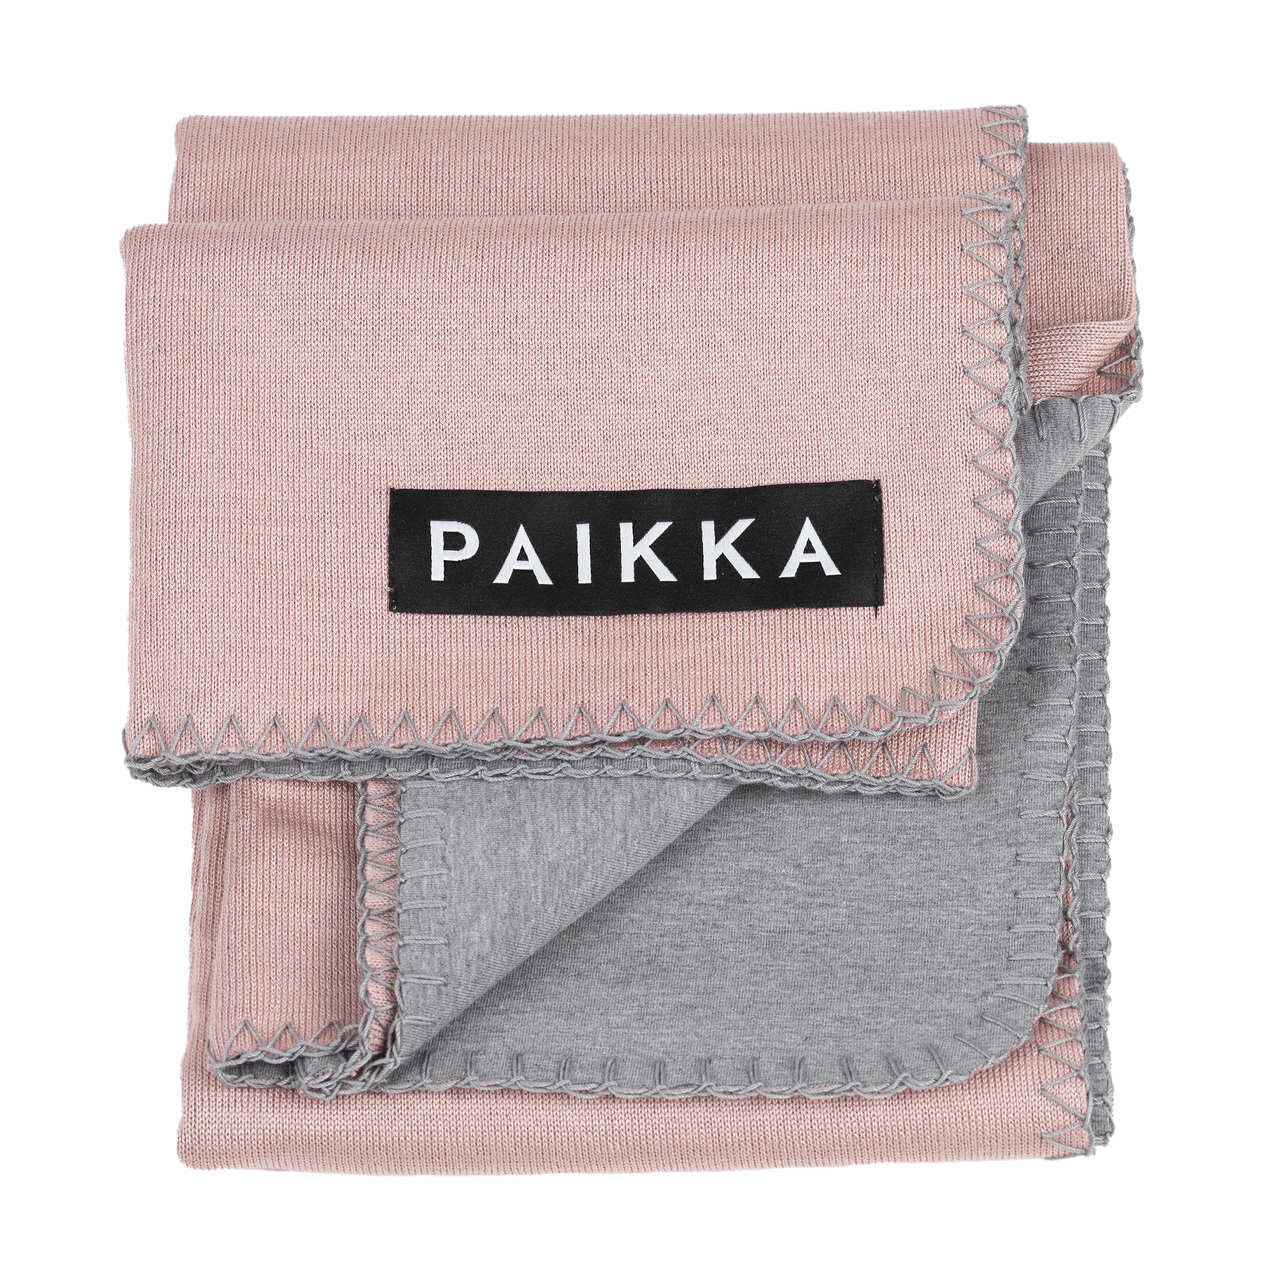 PAIKKA-Recovery-Blanket-waermende-Haustierdecke-Image1-60-46135